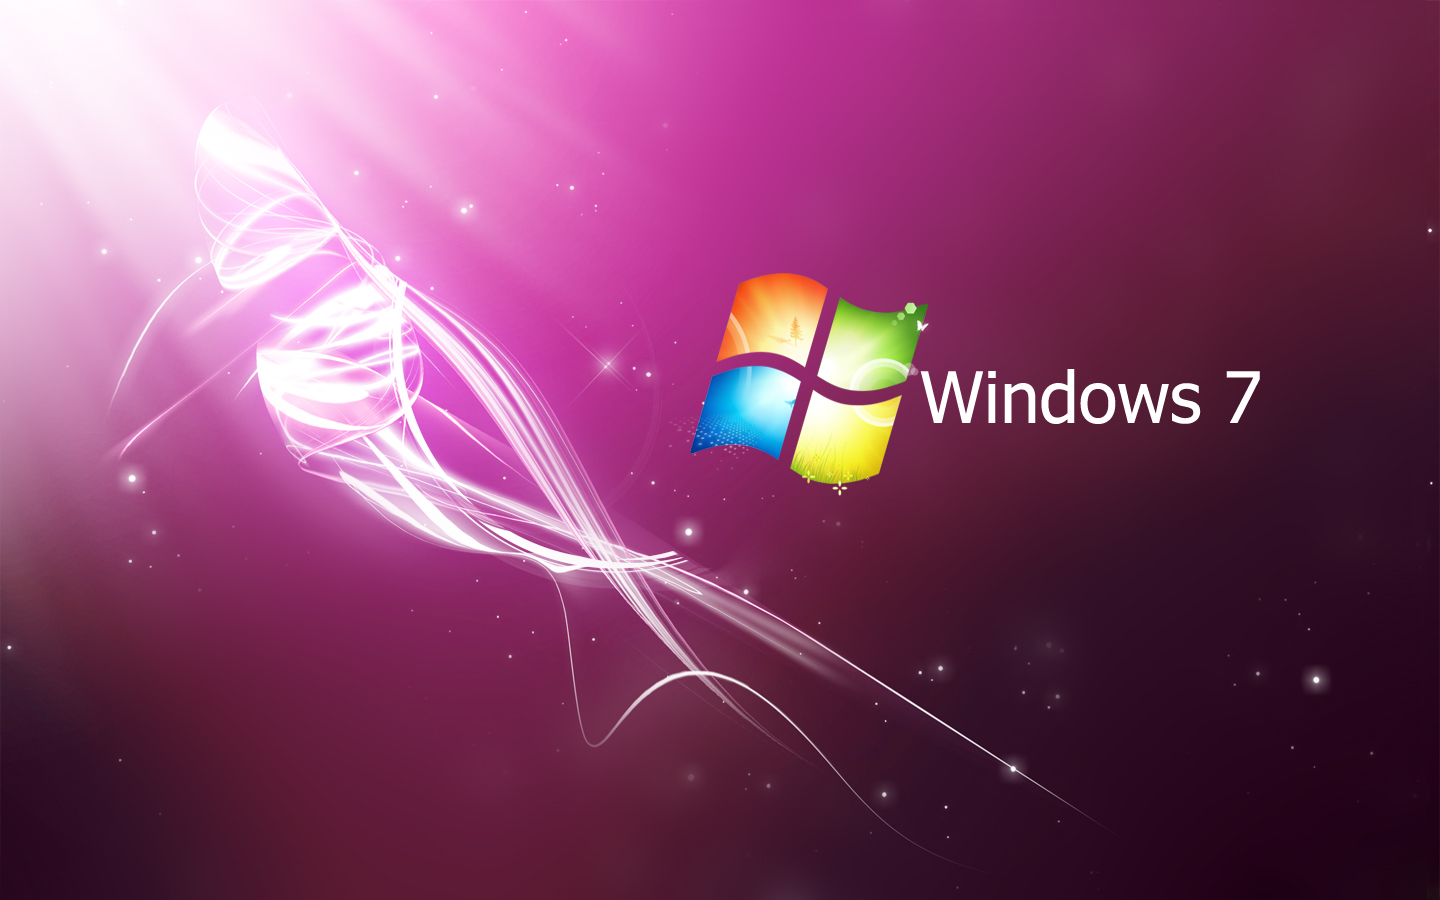 Nếu bạn thích động lực từ hình ảnh, bộ sưu tập hình nền Windows 7 hoàn toàn đều làm hài lòng bạn. Với đủ màu sắc và phong cách khác nhau, bạn sẽ chẳng bao giờ buồn chán khi làm việc trên máy tính. 